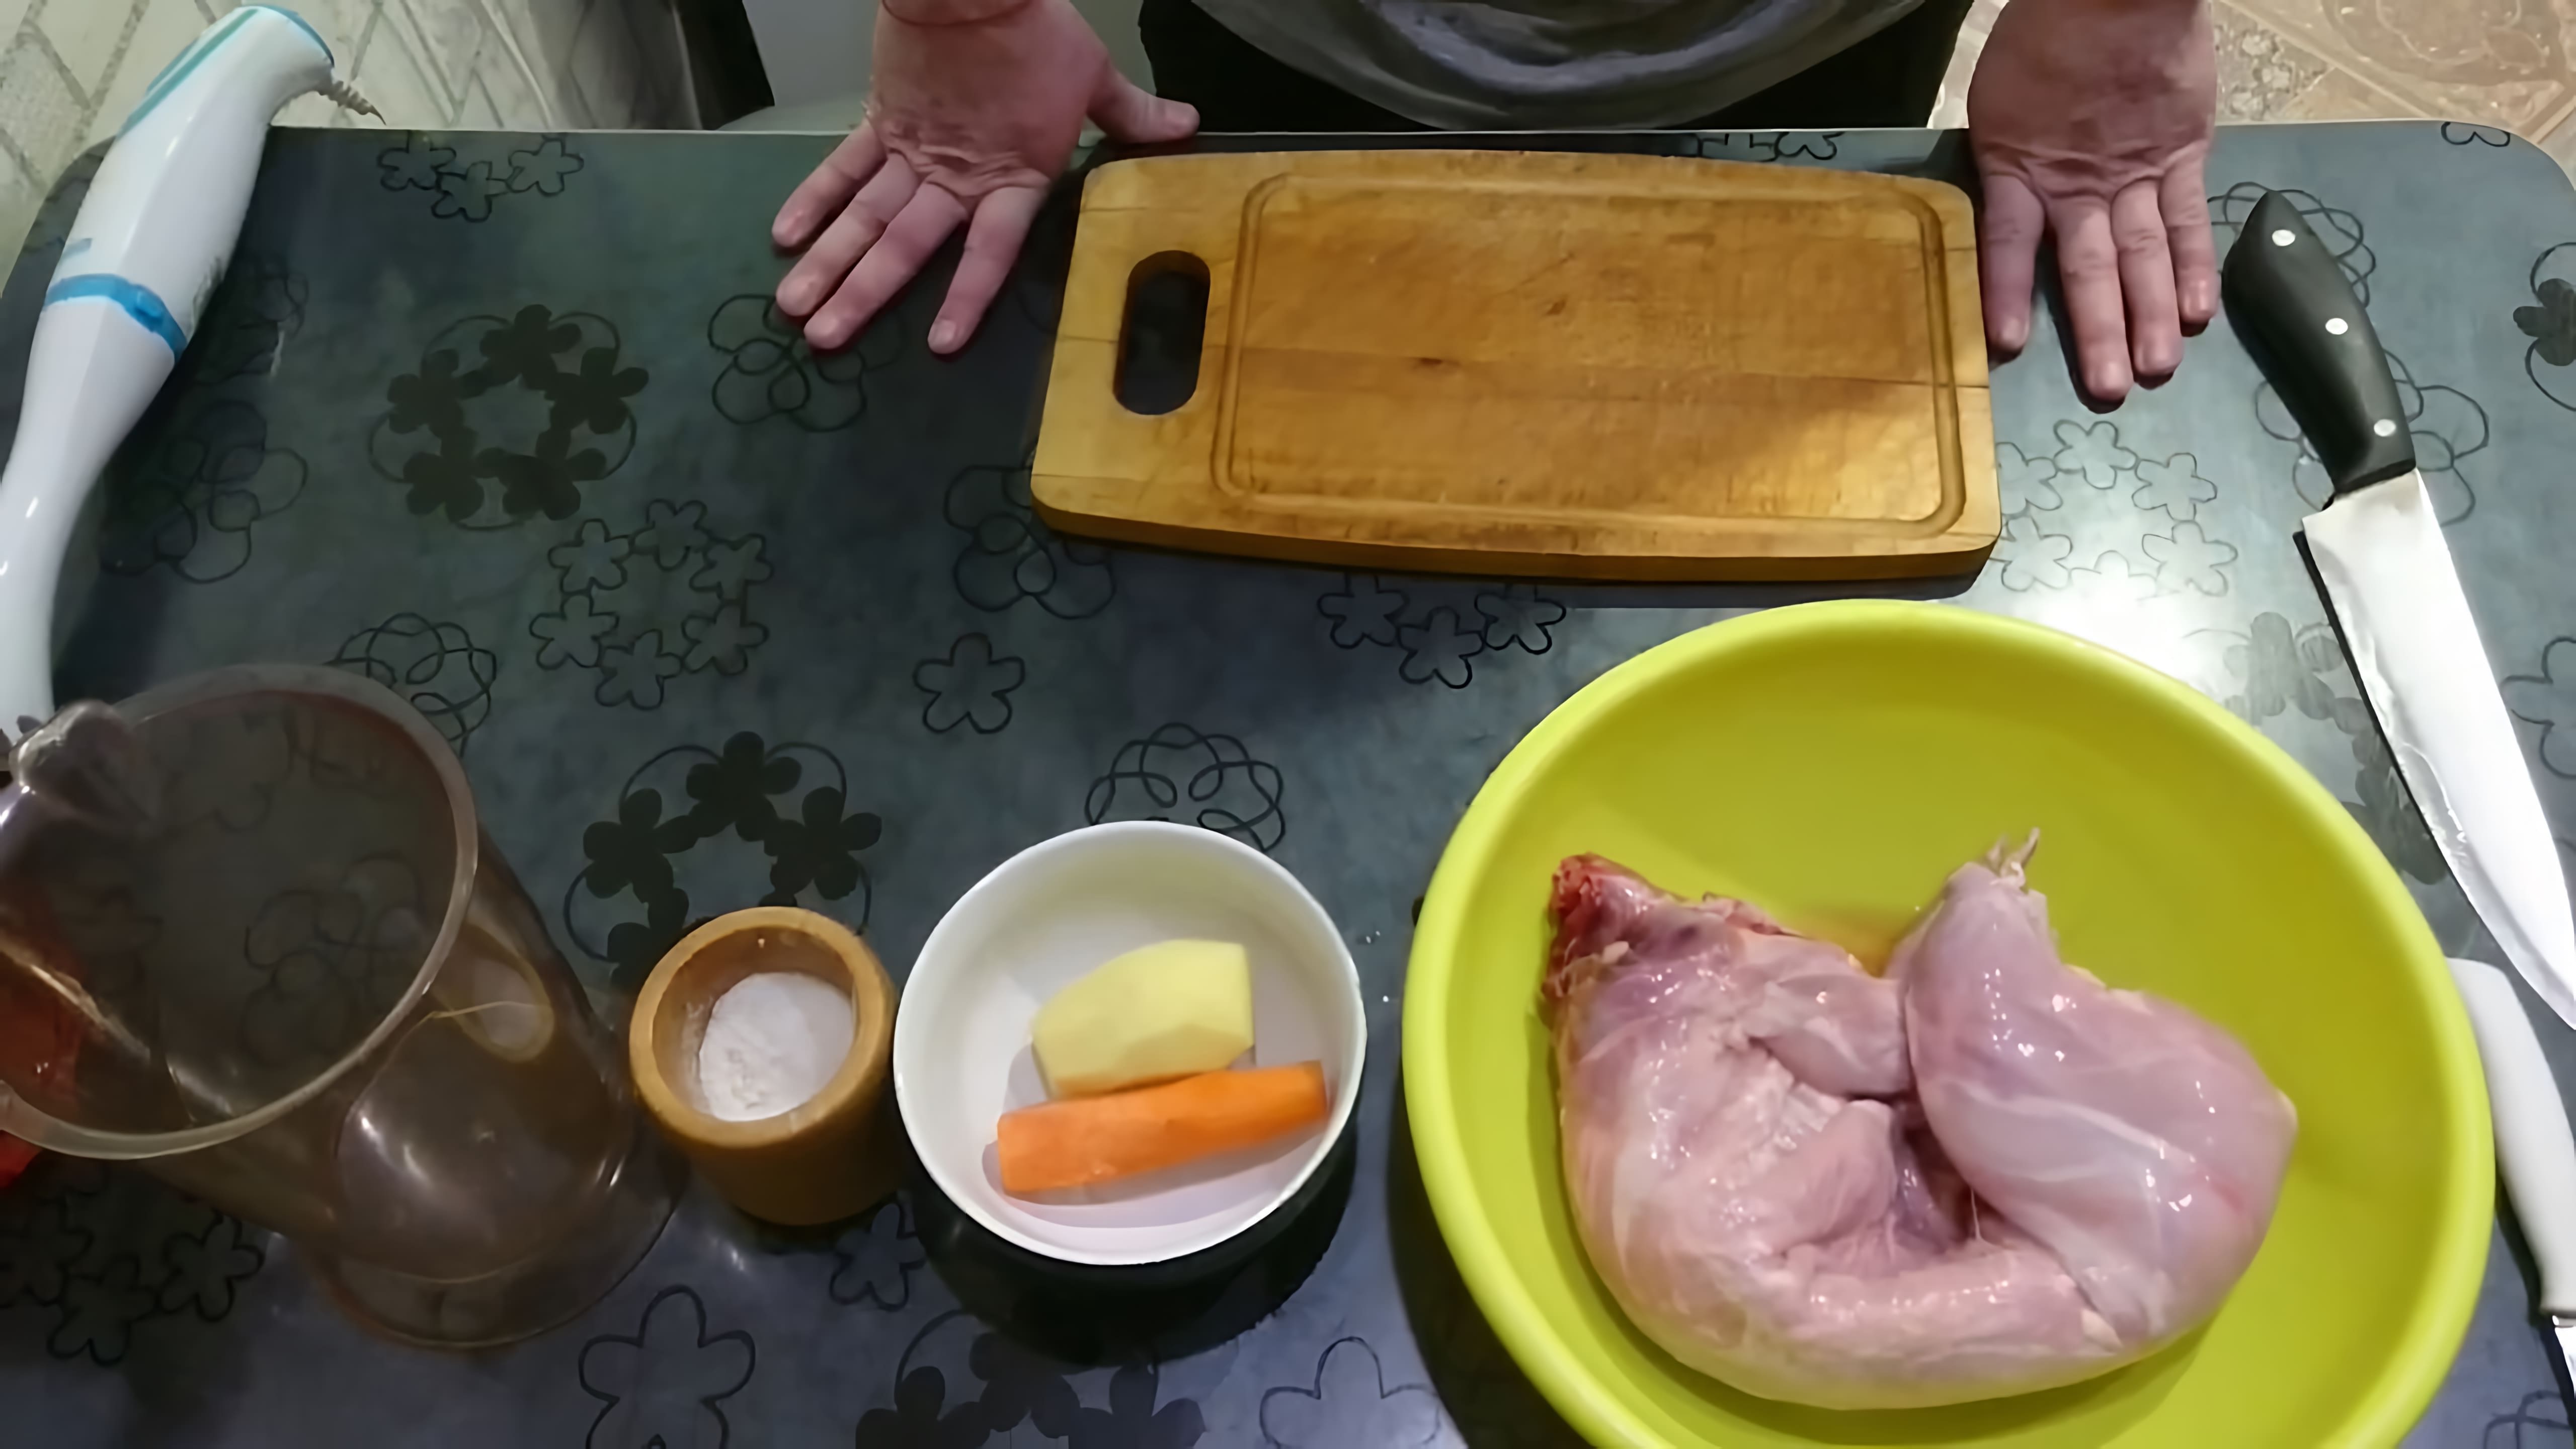 В этом видео демонстрируется процесс приготовления кролика для детского прикорма